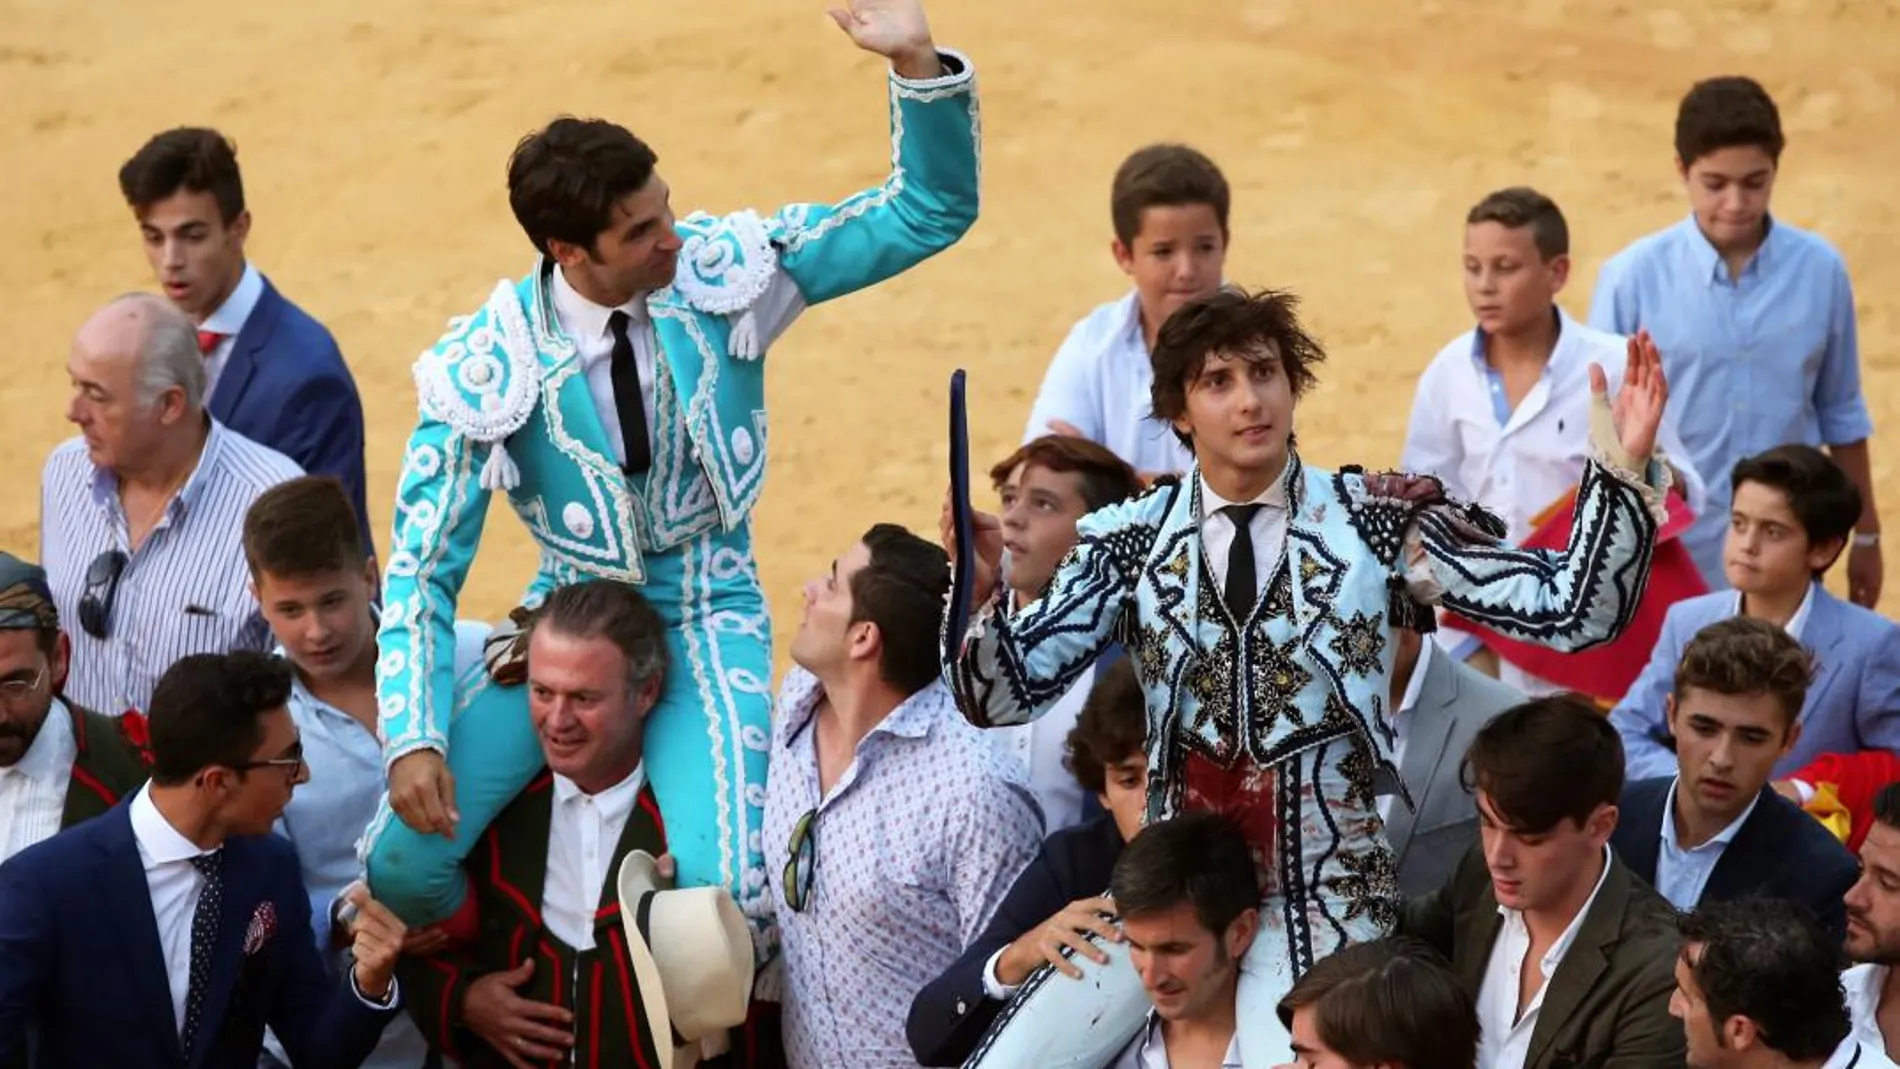 Cayetano Rivera y Roca Rey salen a hombros tras el festejo taurino goyesco que se celebró esta tarde en la Plaza de Toros de Ronda. EFE/Daniel Pérez